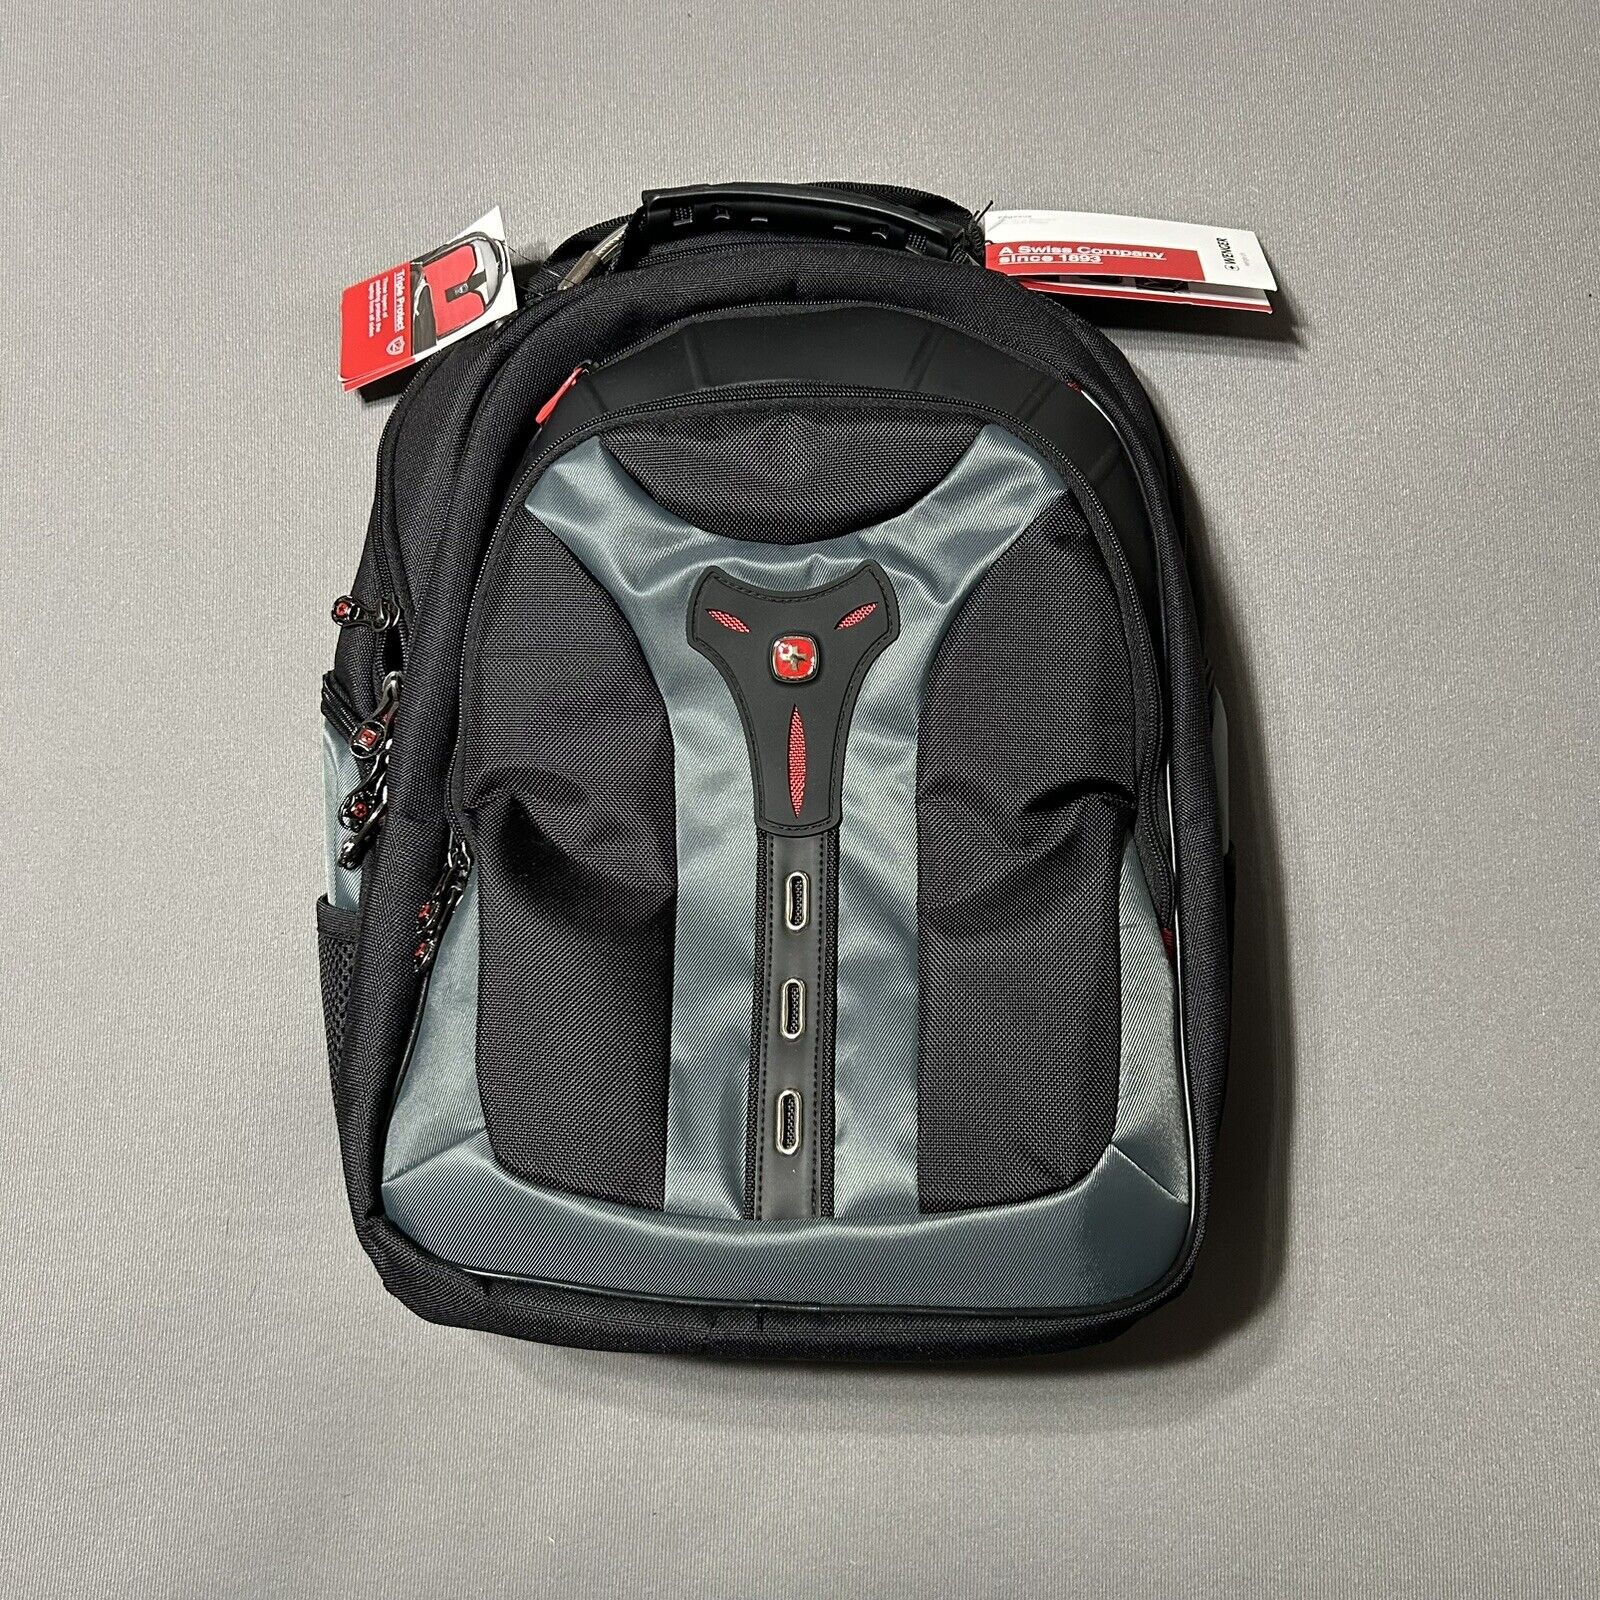 Swiss Gear Wenger Pegasus 17” Laptop Backpack Tablet Pocket Black Blue New